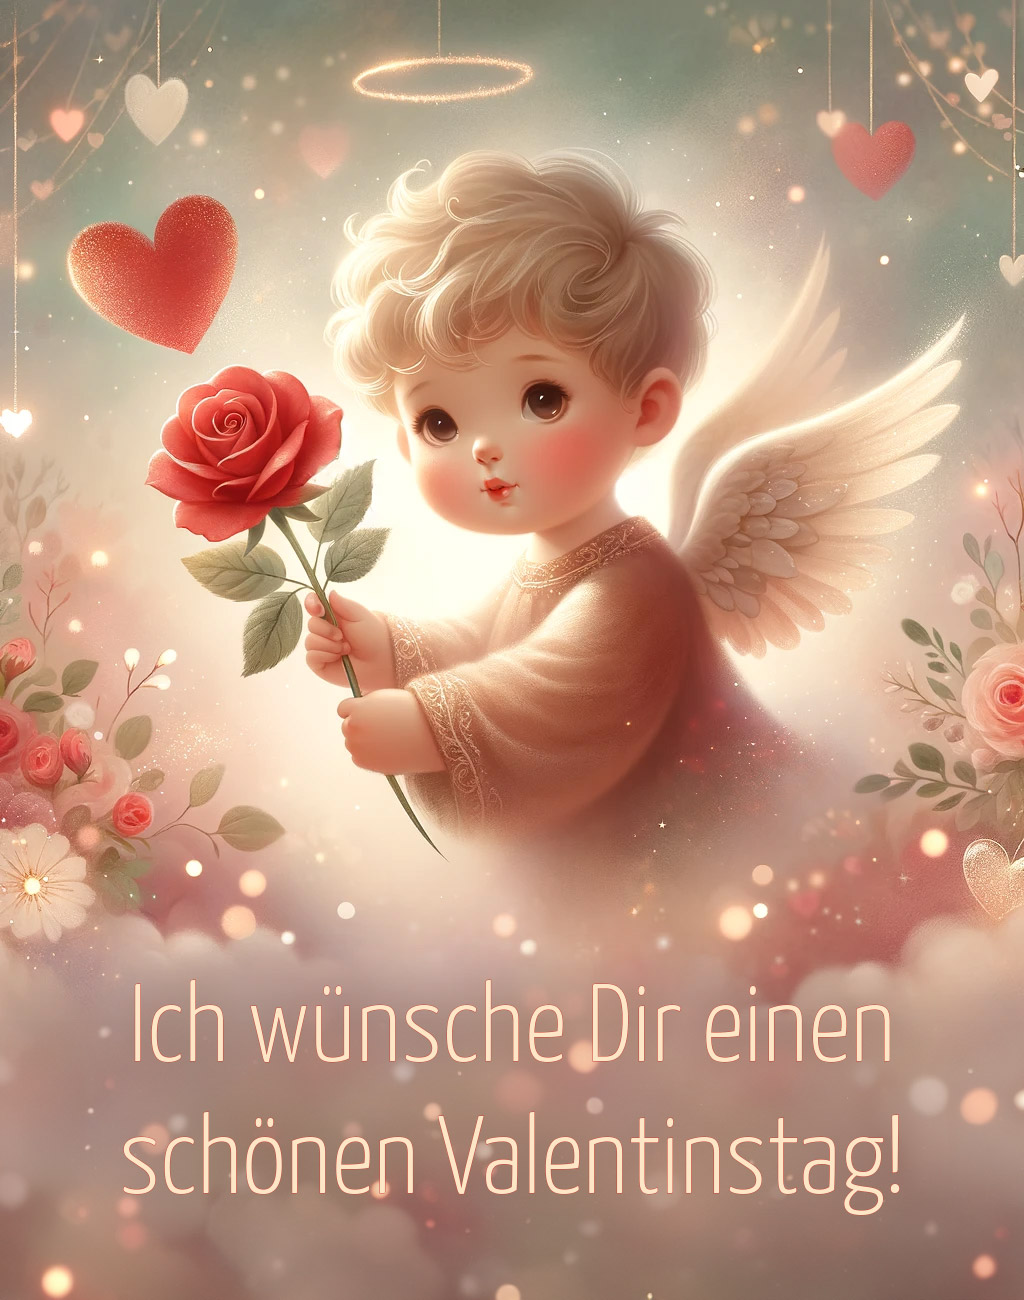 #valentinstag #kunst 27 - Ich wünsche Dir einen schönen Valentinstag.